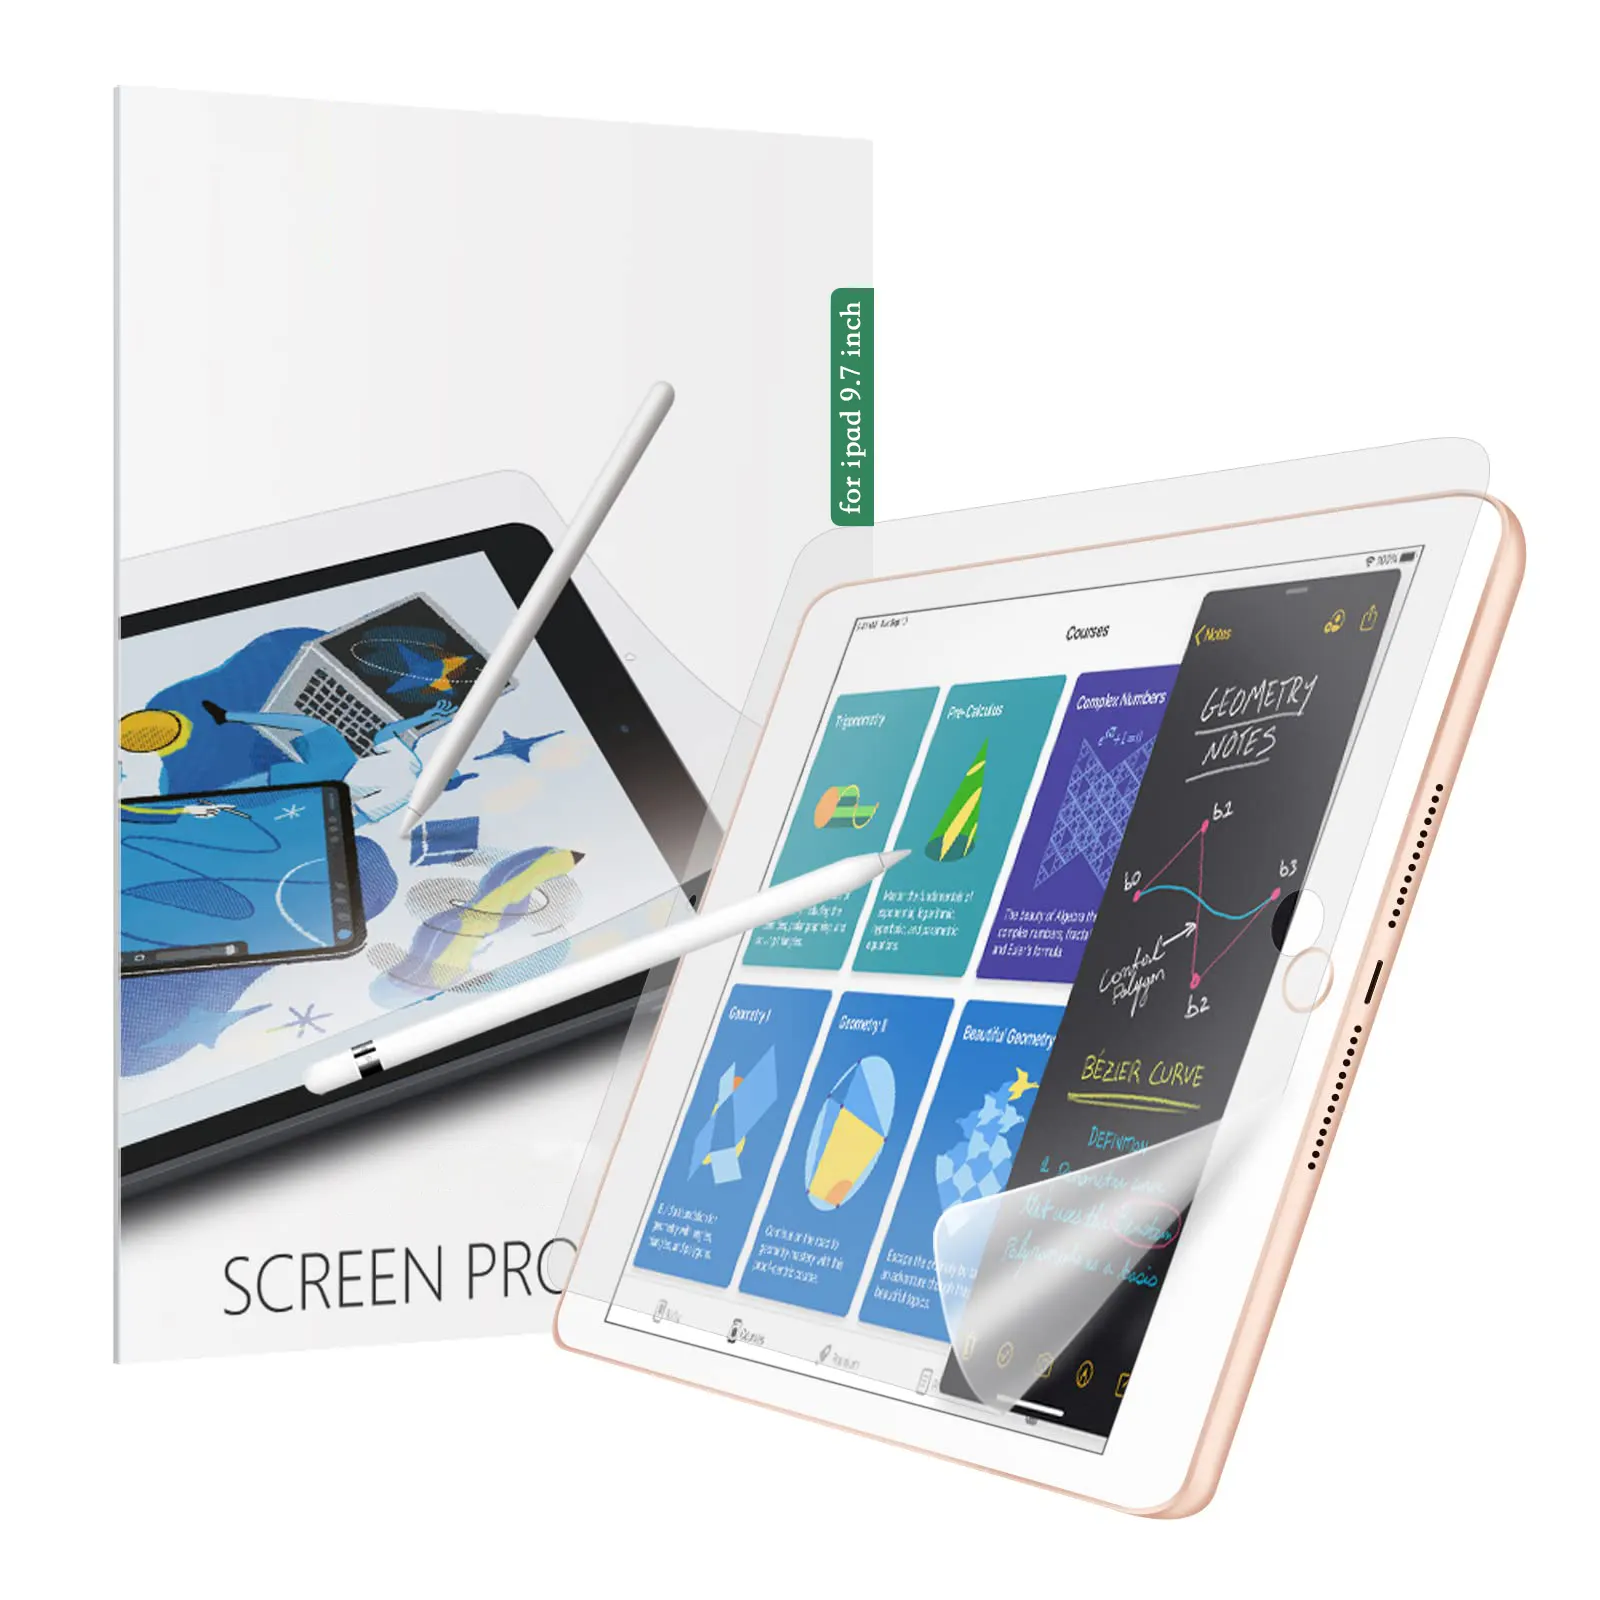 Reedee paperlike TPU bảo vệ màn hình như giấy bảo vệ màn hình cho từ Ipad 2022 bảo vệ màn hình giấy như Ipad